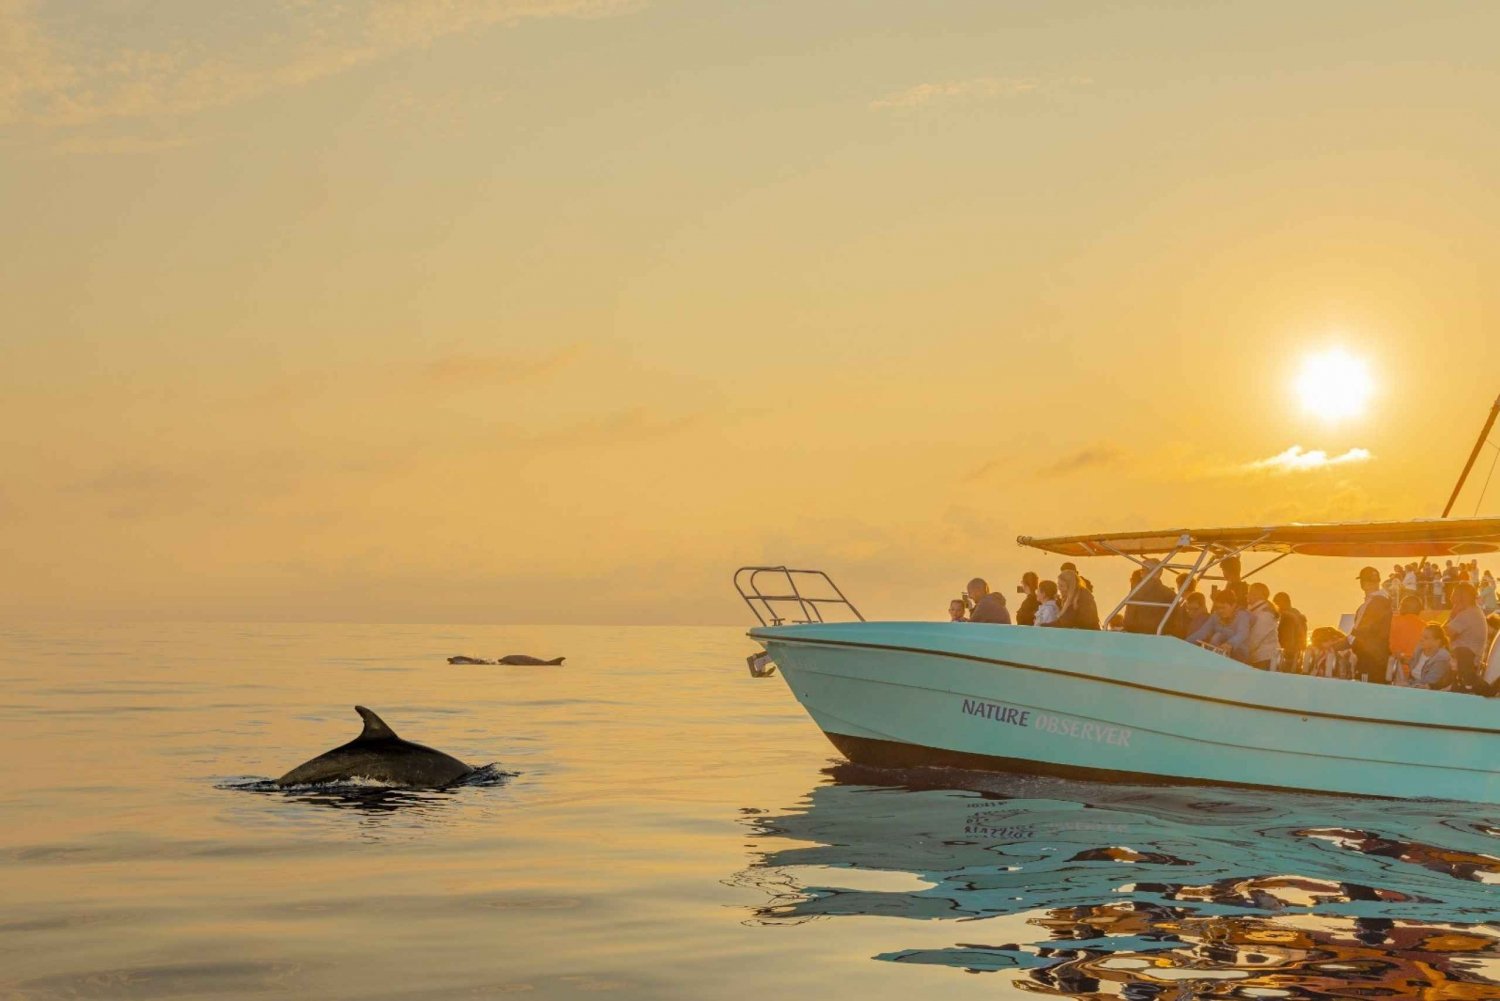 Z Alcudii: rejs łodzią z obserwacją delfinów o wschodzie słońca